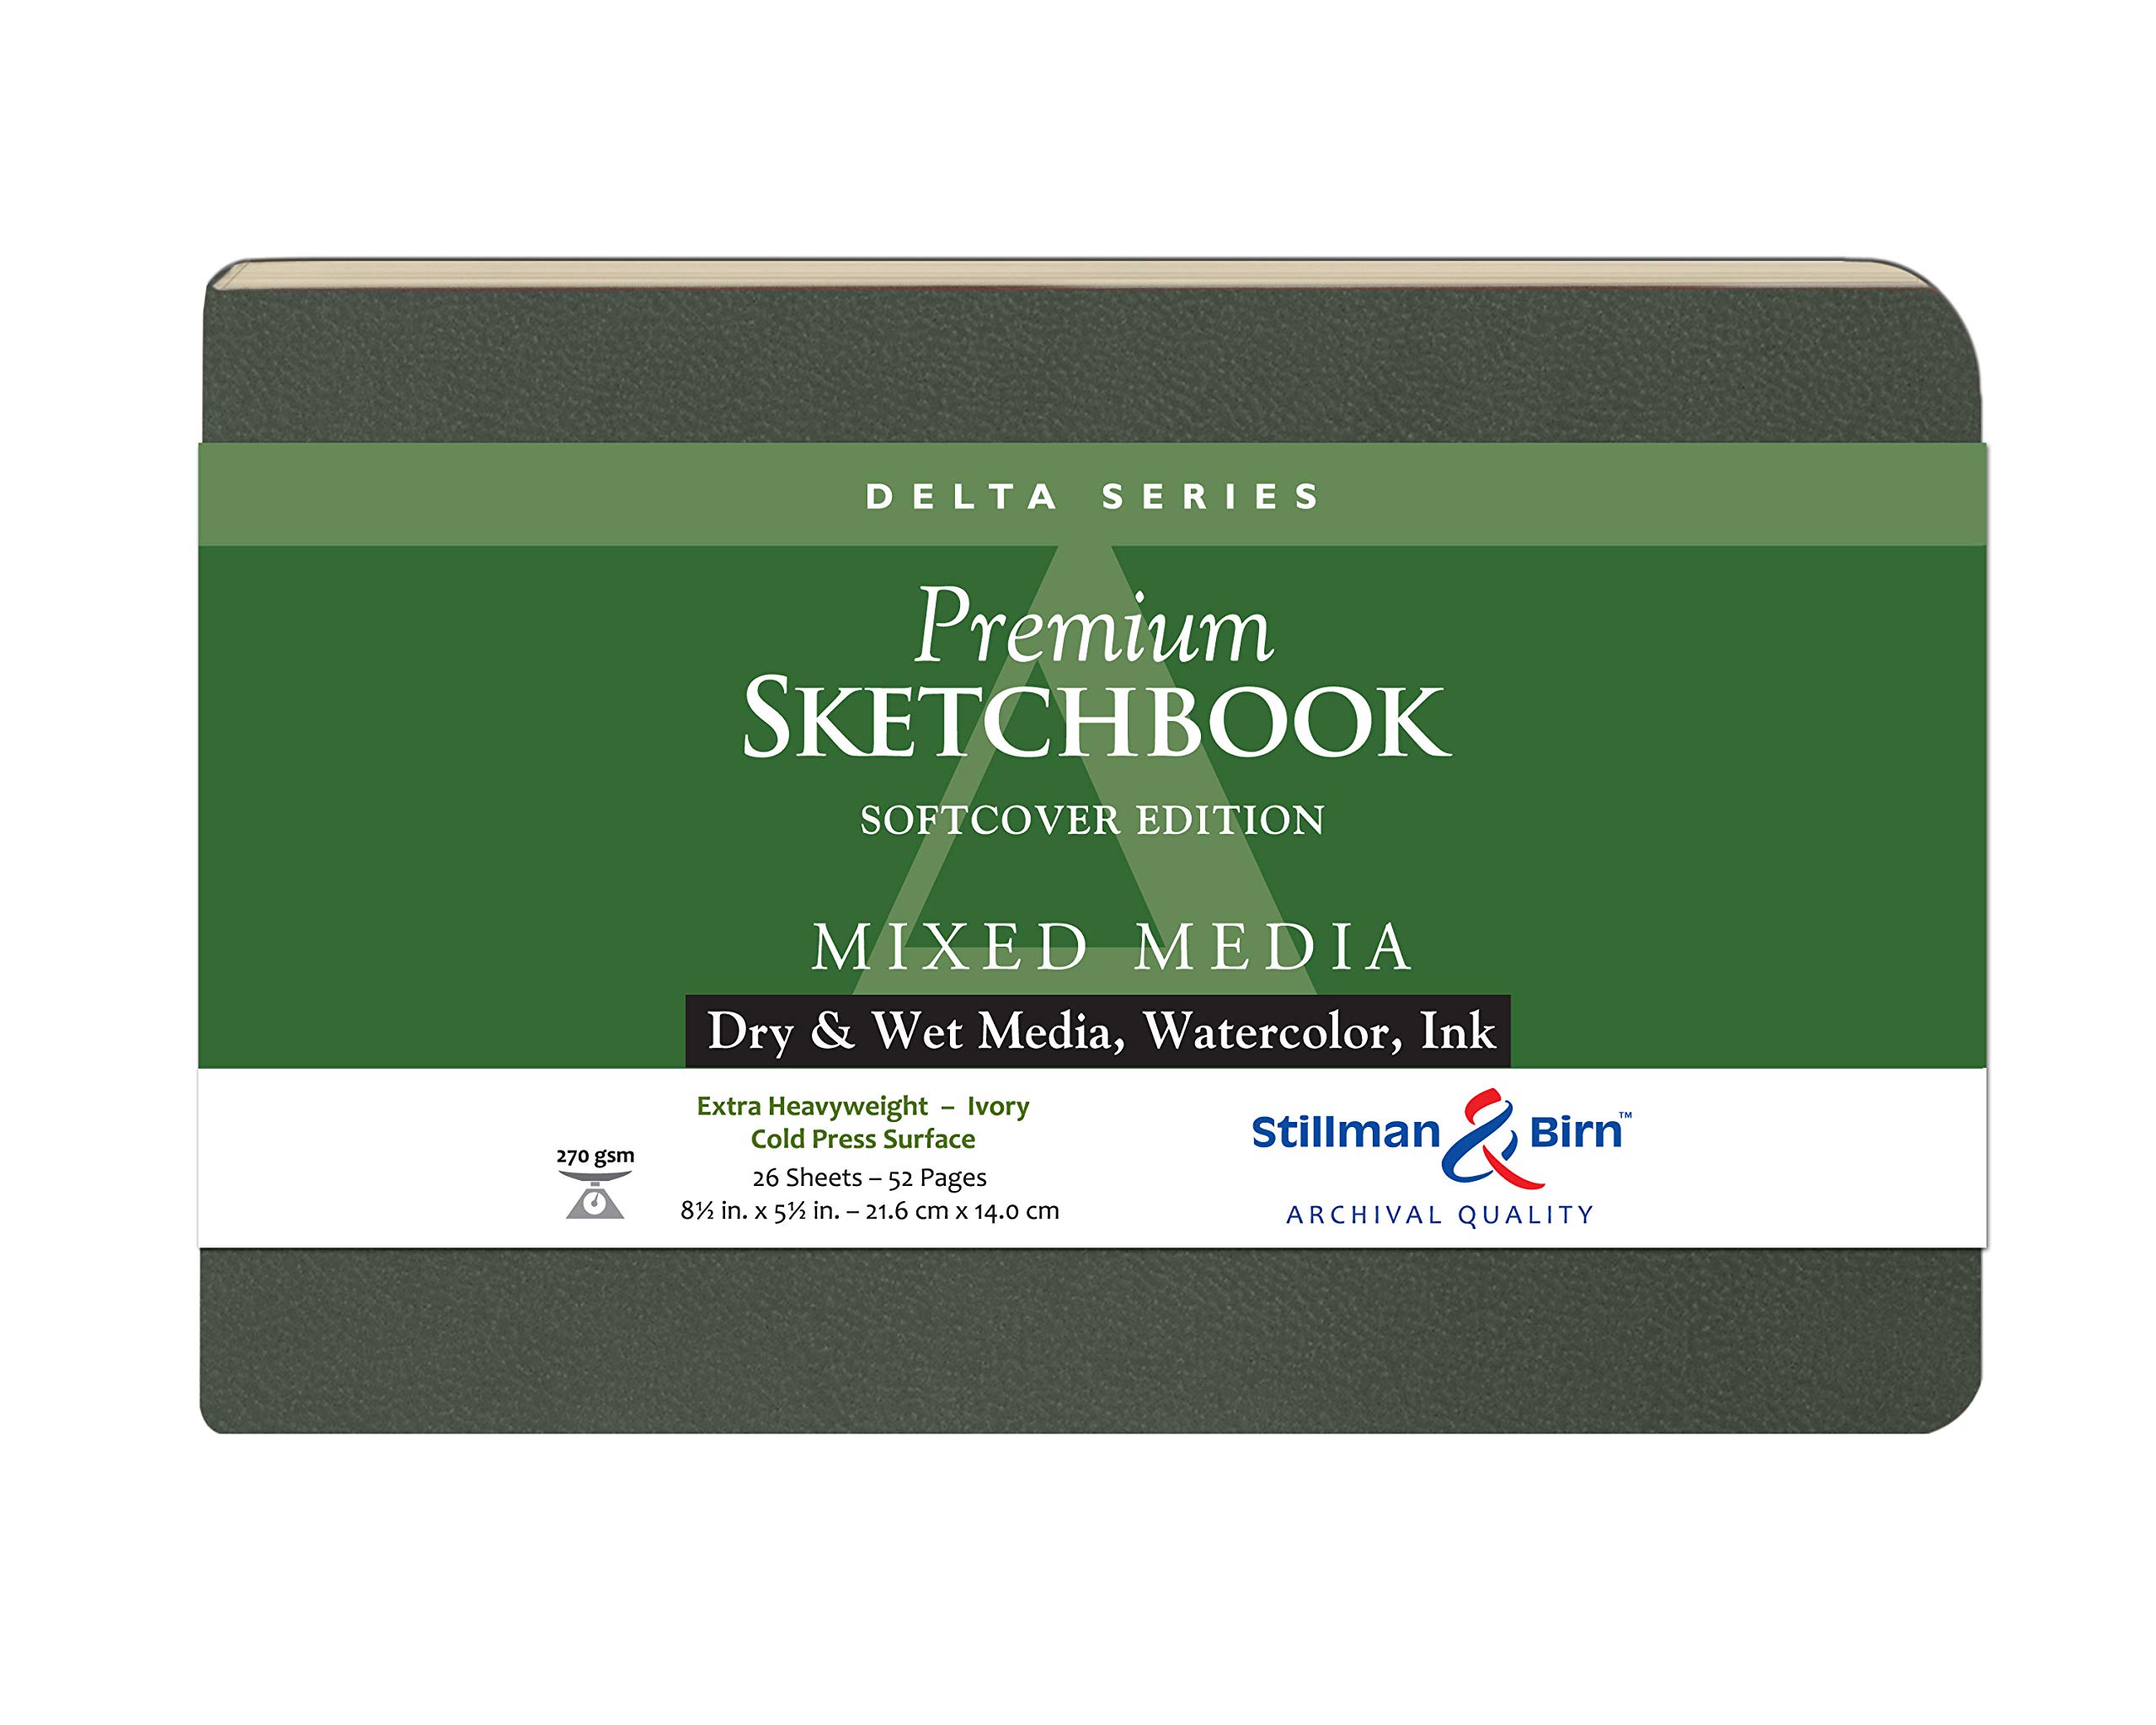 Delta Softcover Sketchbook 8.5X5.5 Ls by Stillman & Birn